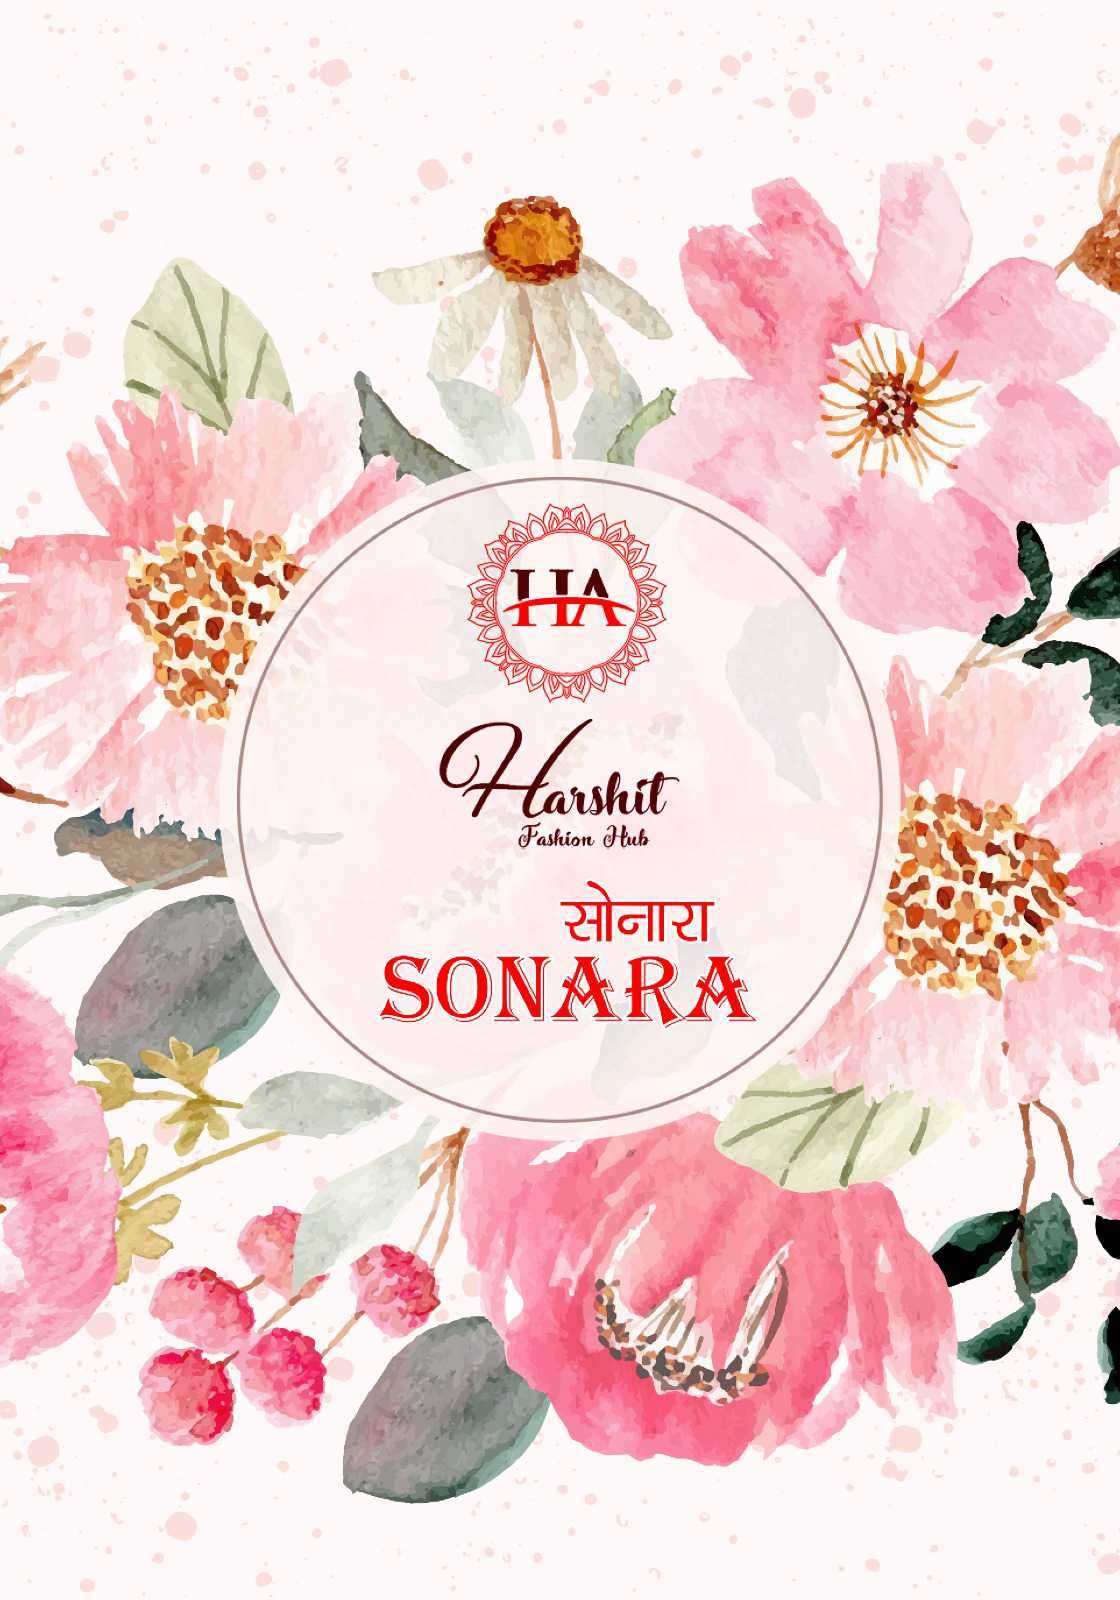 Harshit Sonara Rayon Fancy Ladies Suit Online Sales Suppliers